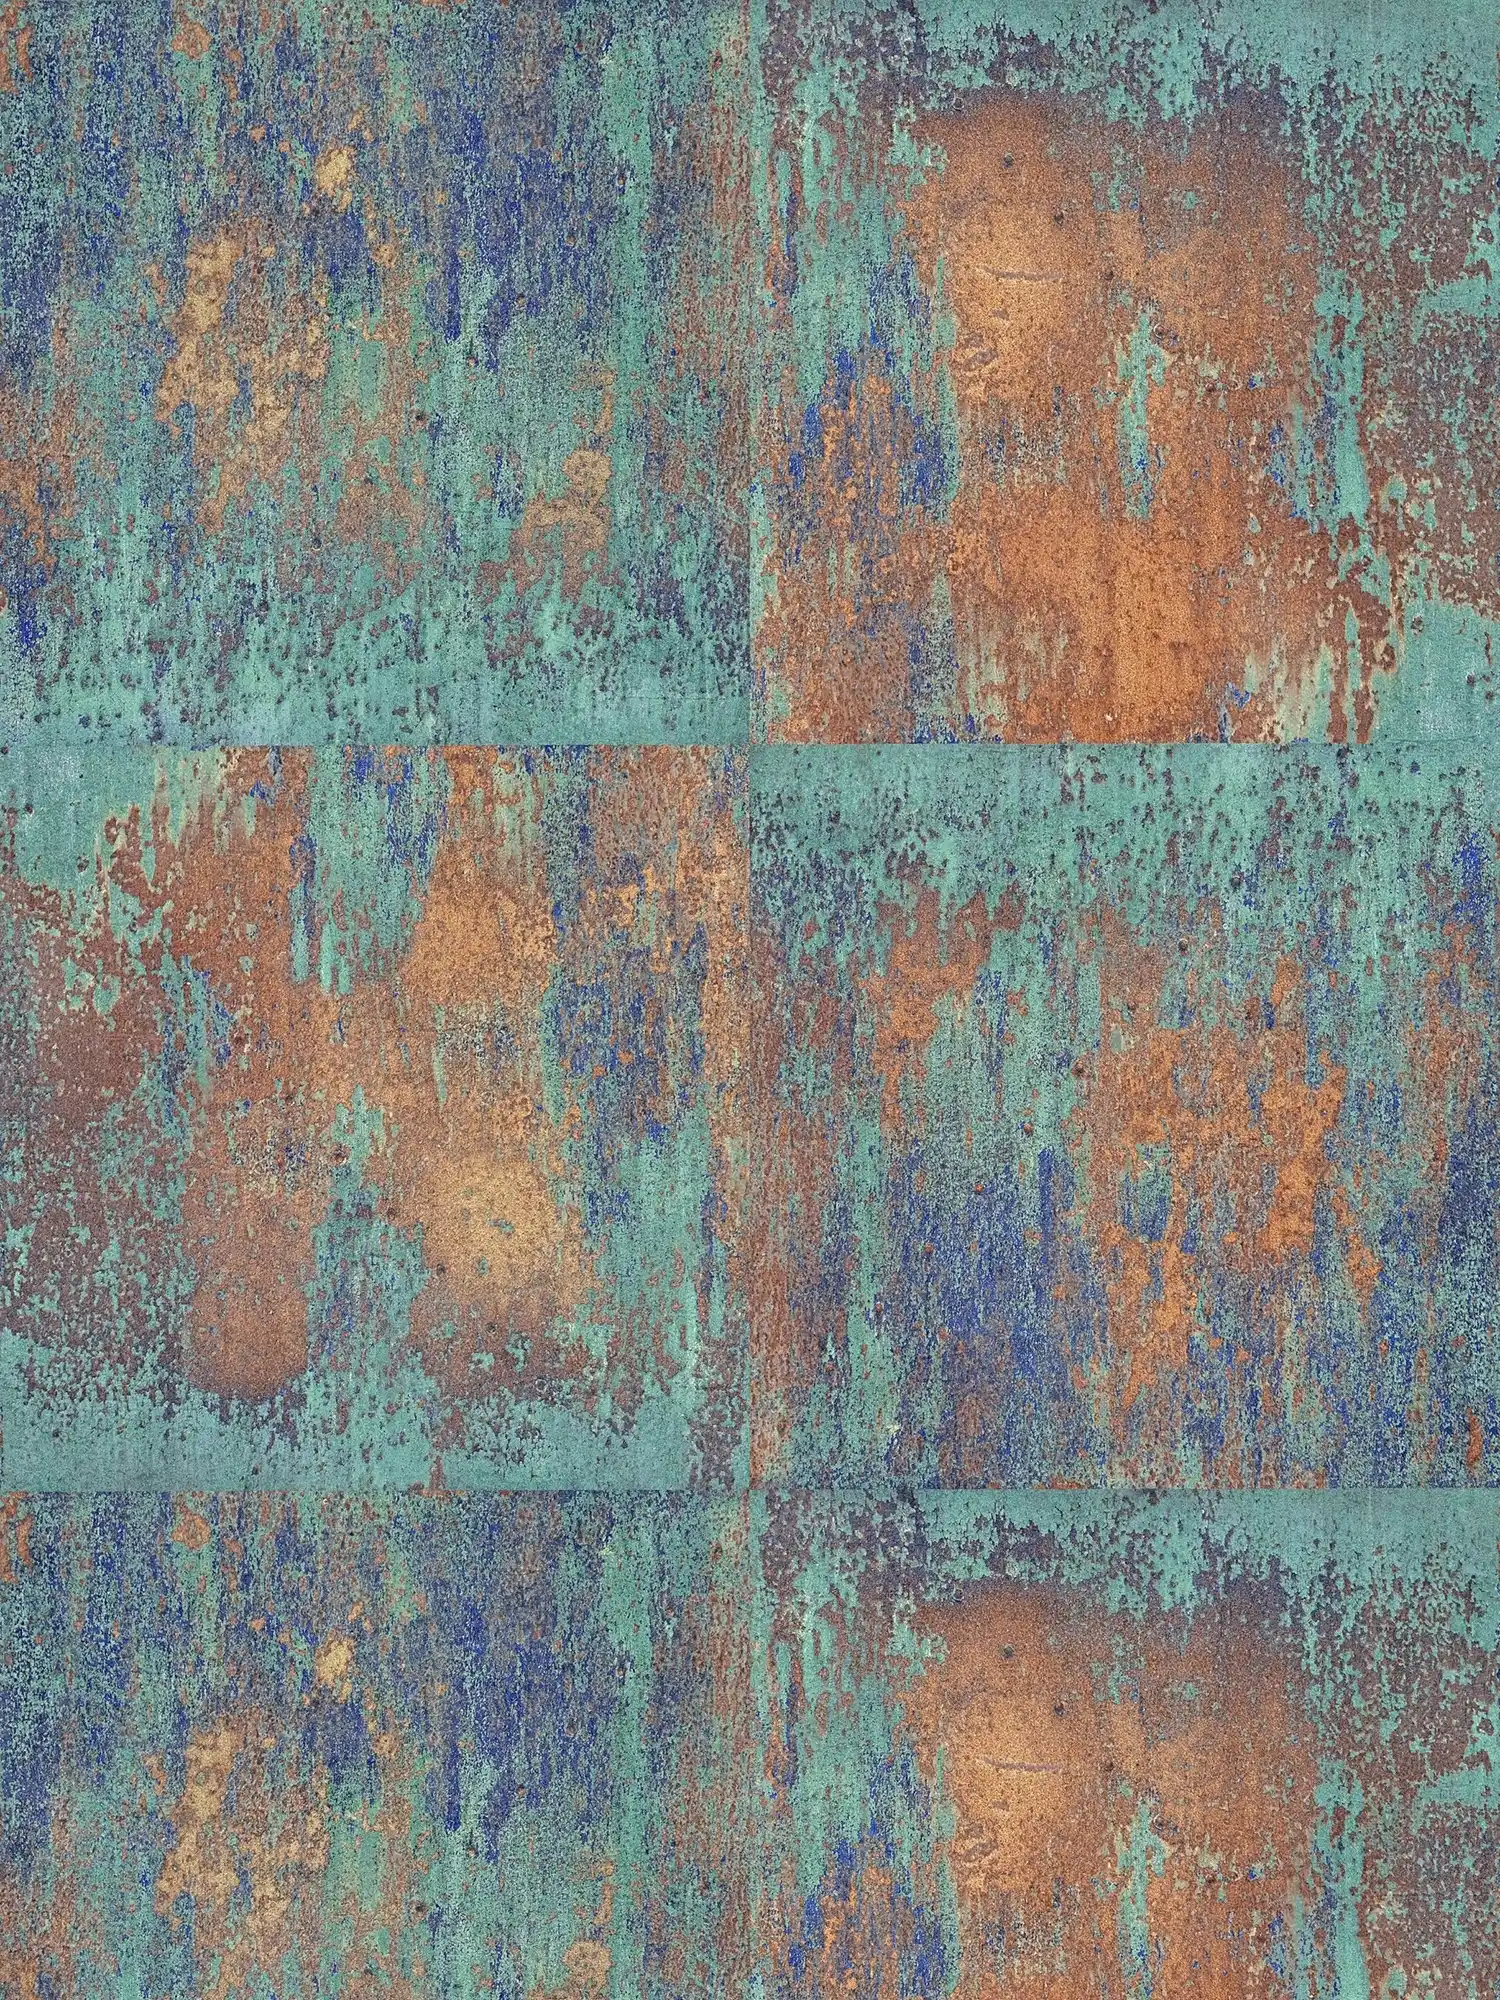         Vliestapete Patina-Design mit Rost und Kupfereffekten – Blau, Braun, Kupfer
    